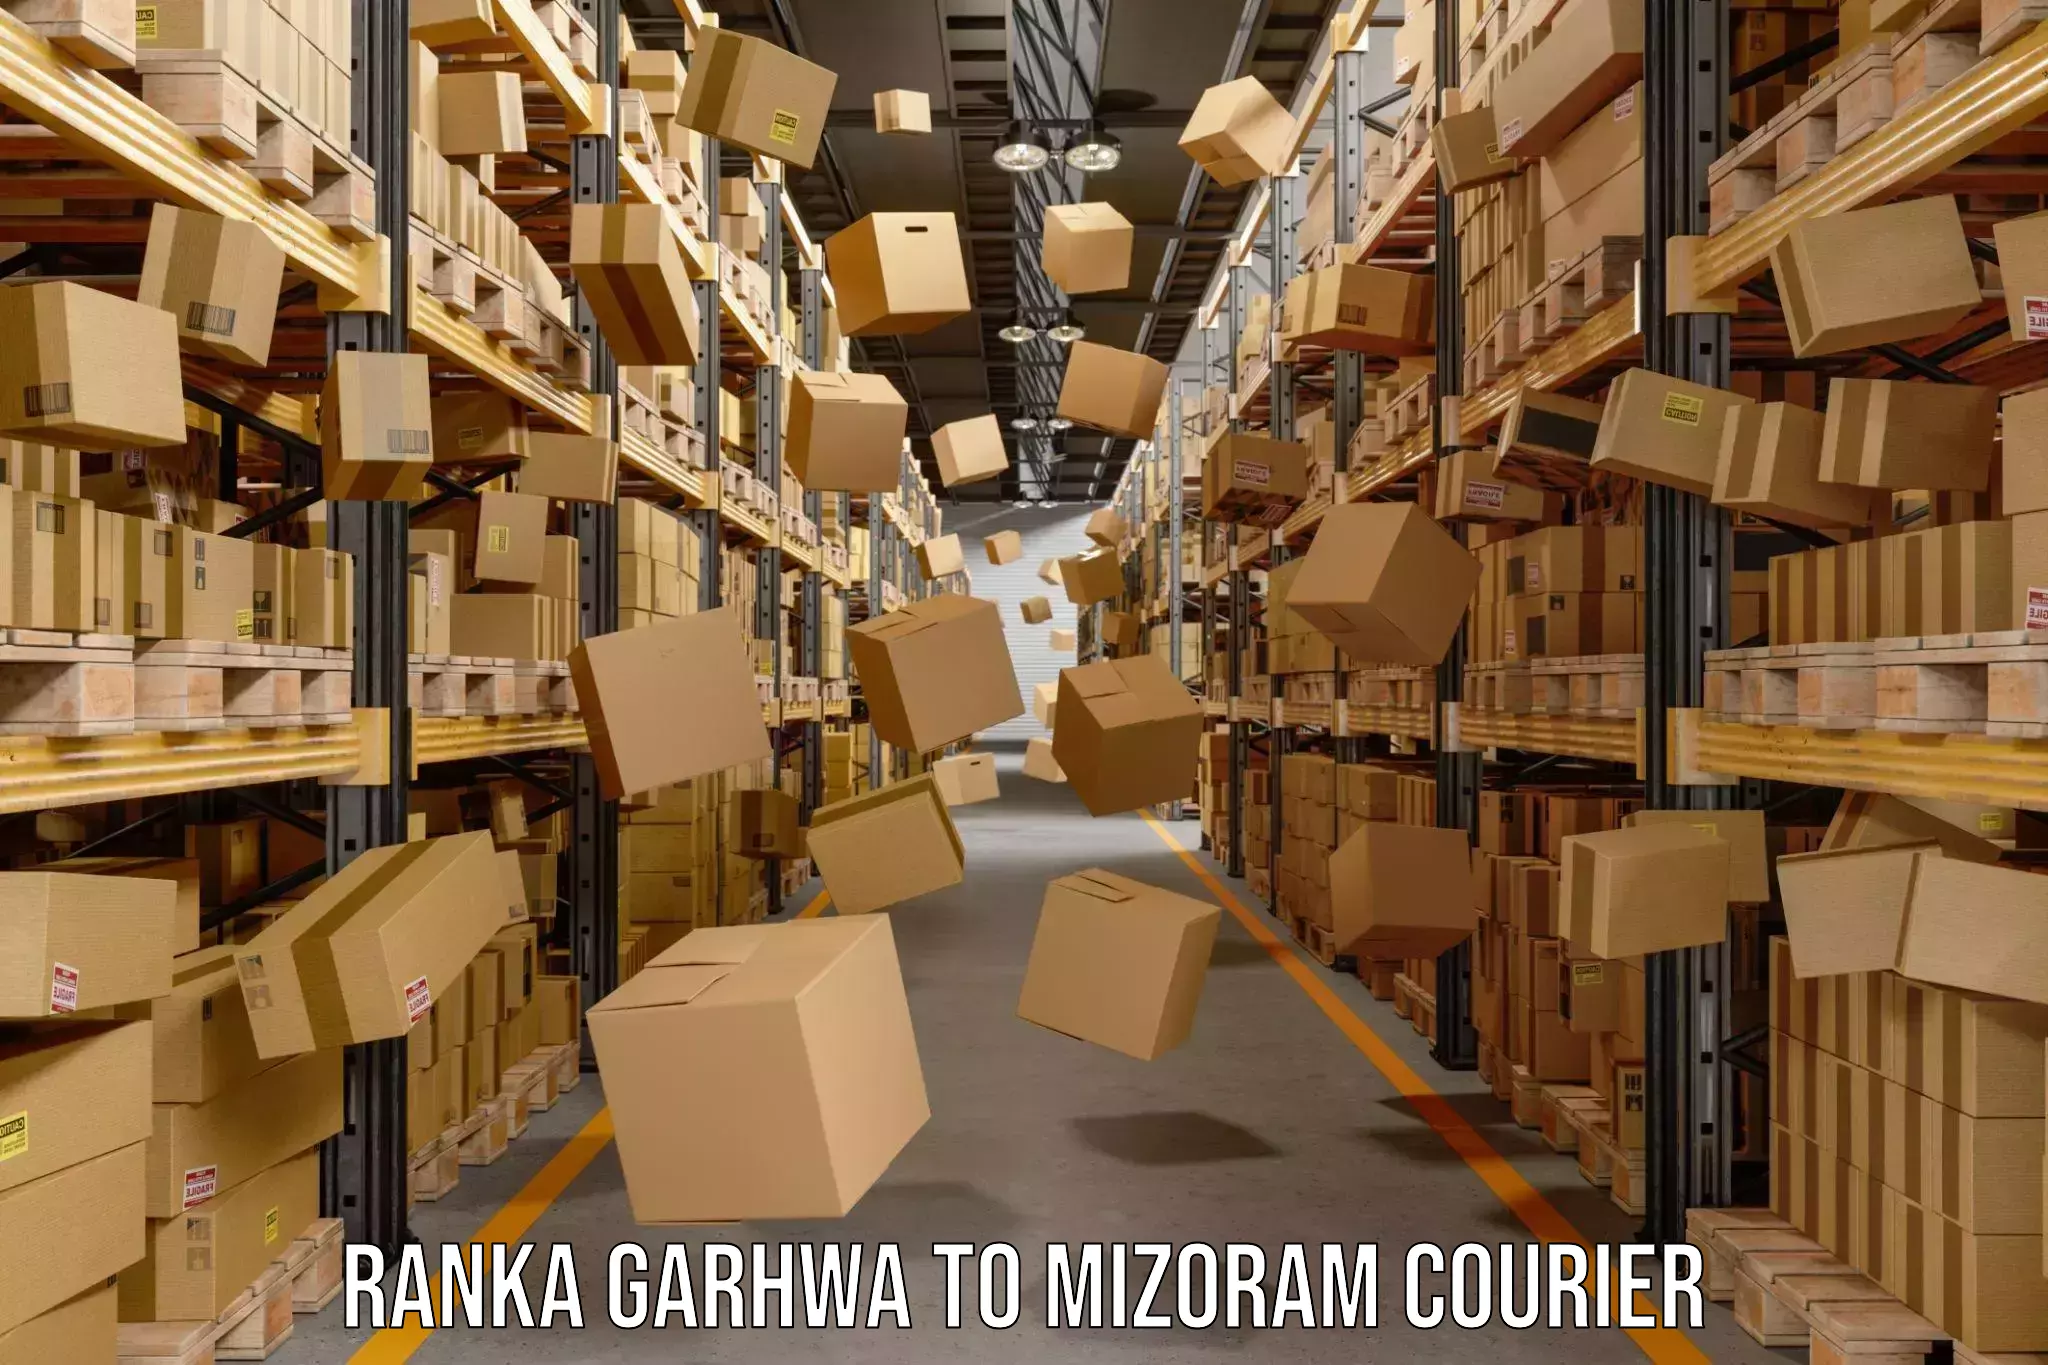 Courier service comparison Ranka Garhwa to Lunglei